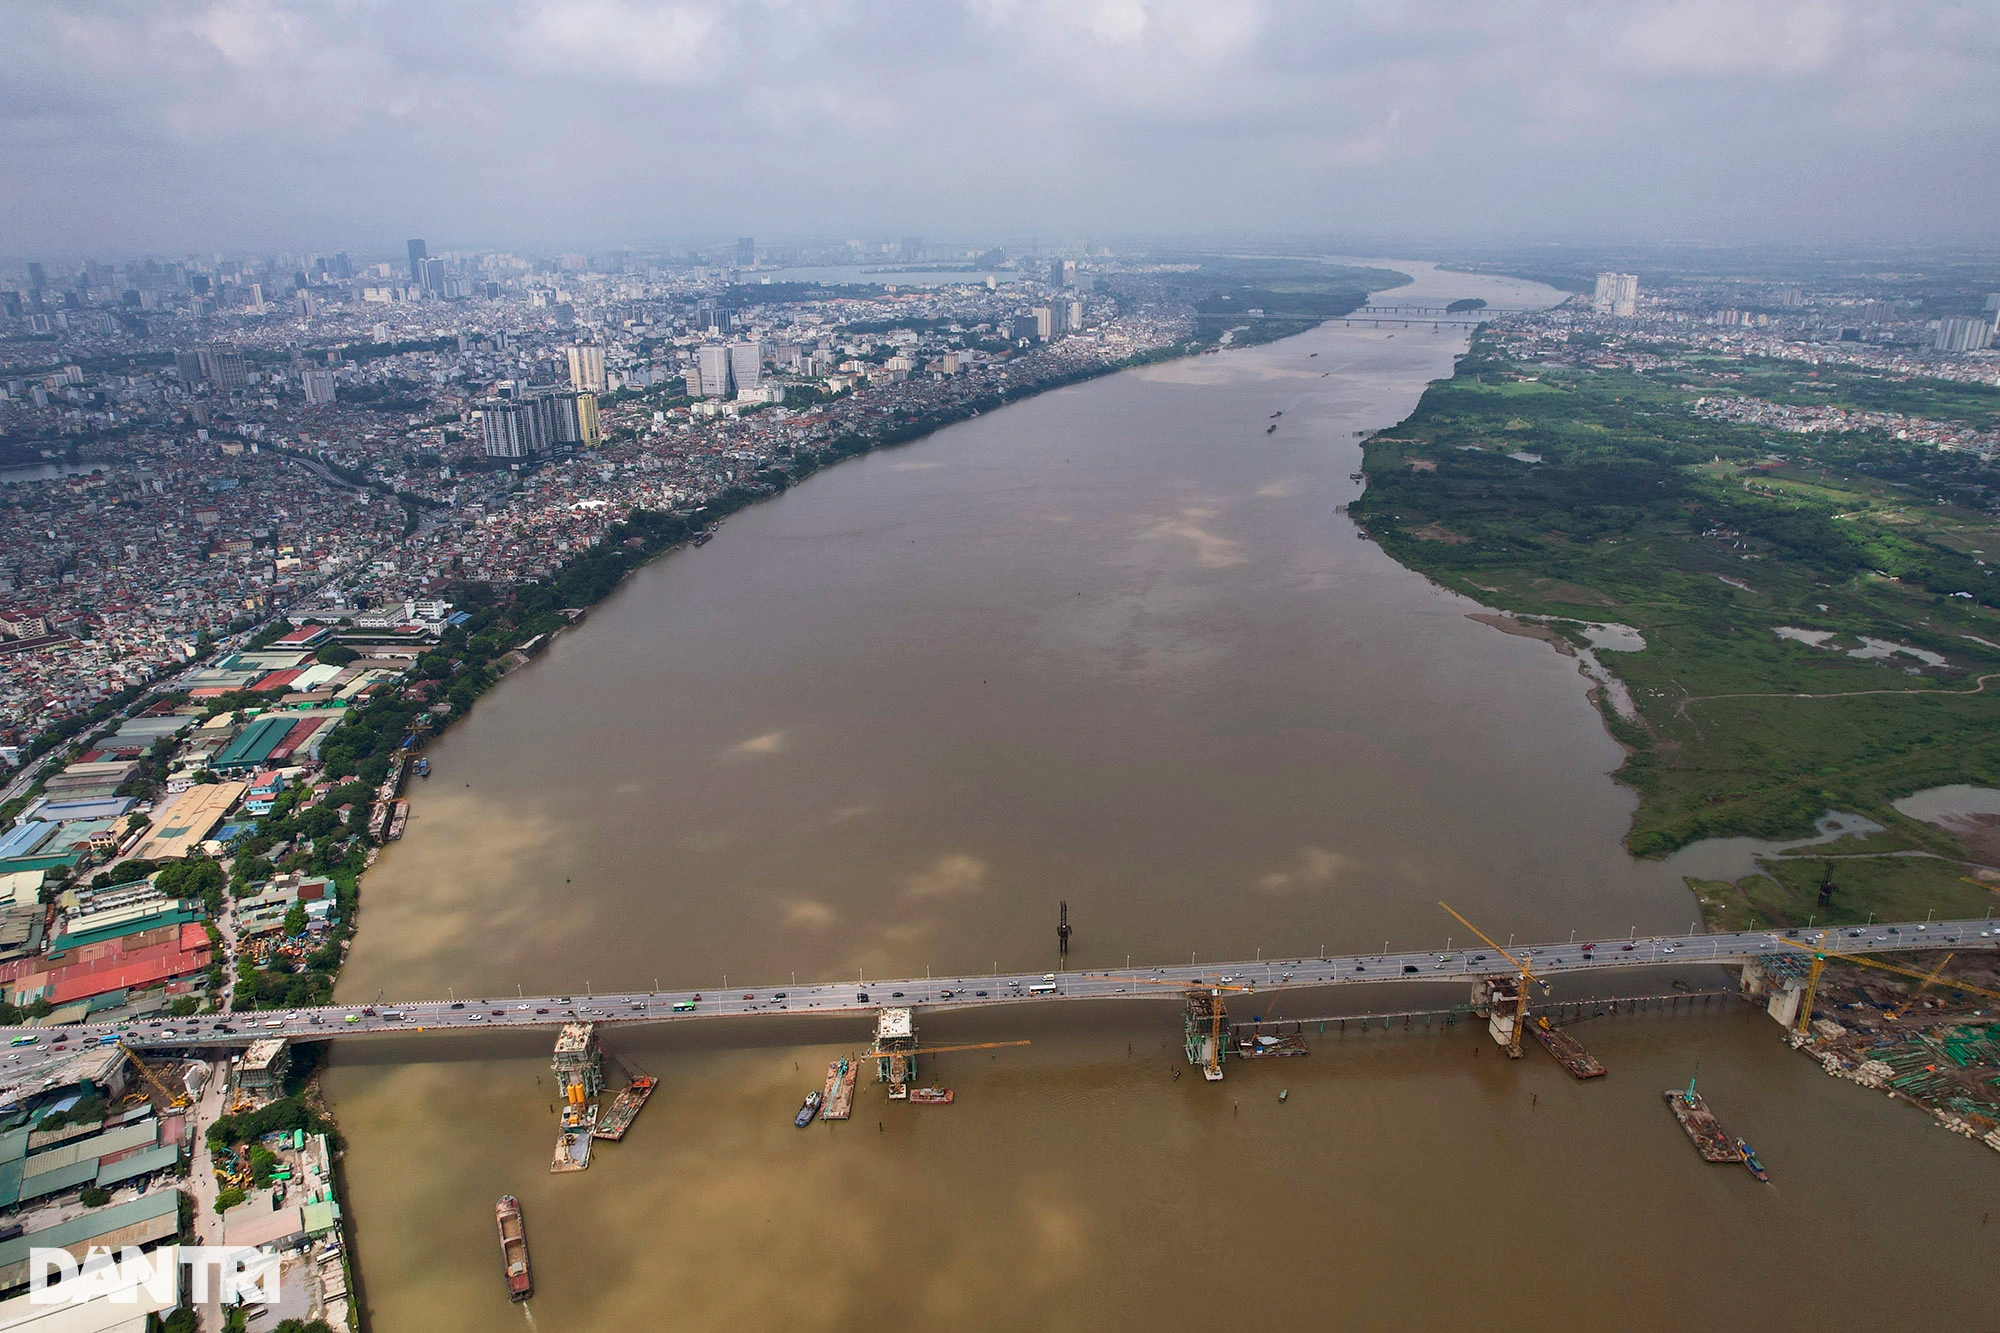 Ngắm 6 cầu qua sông Hồng tại Hà Nội - 18